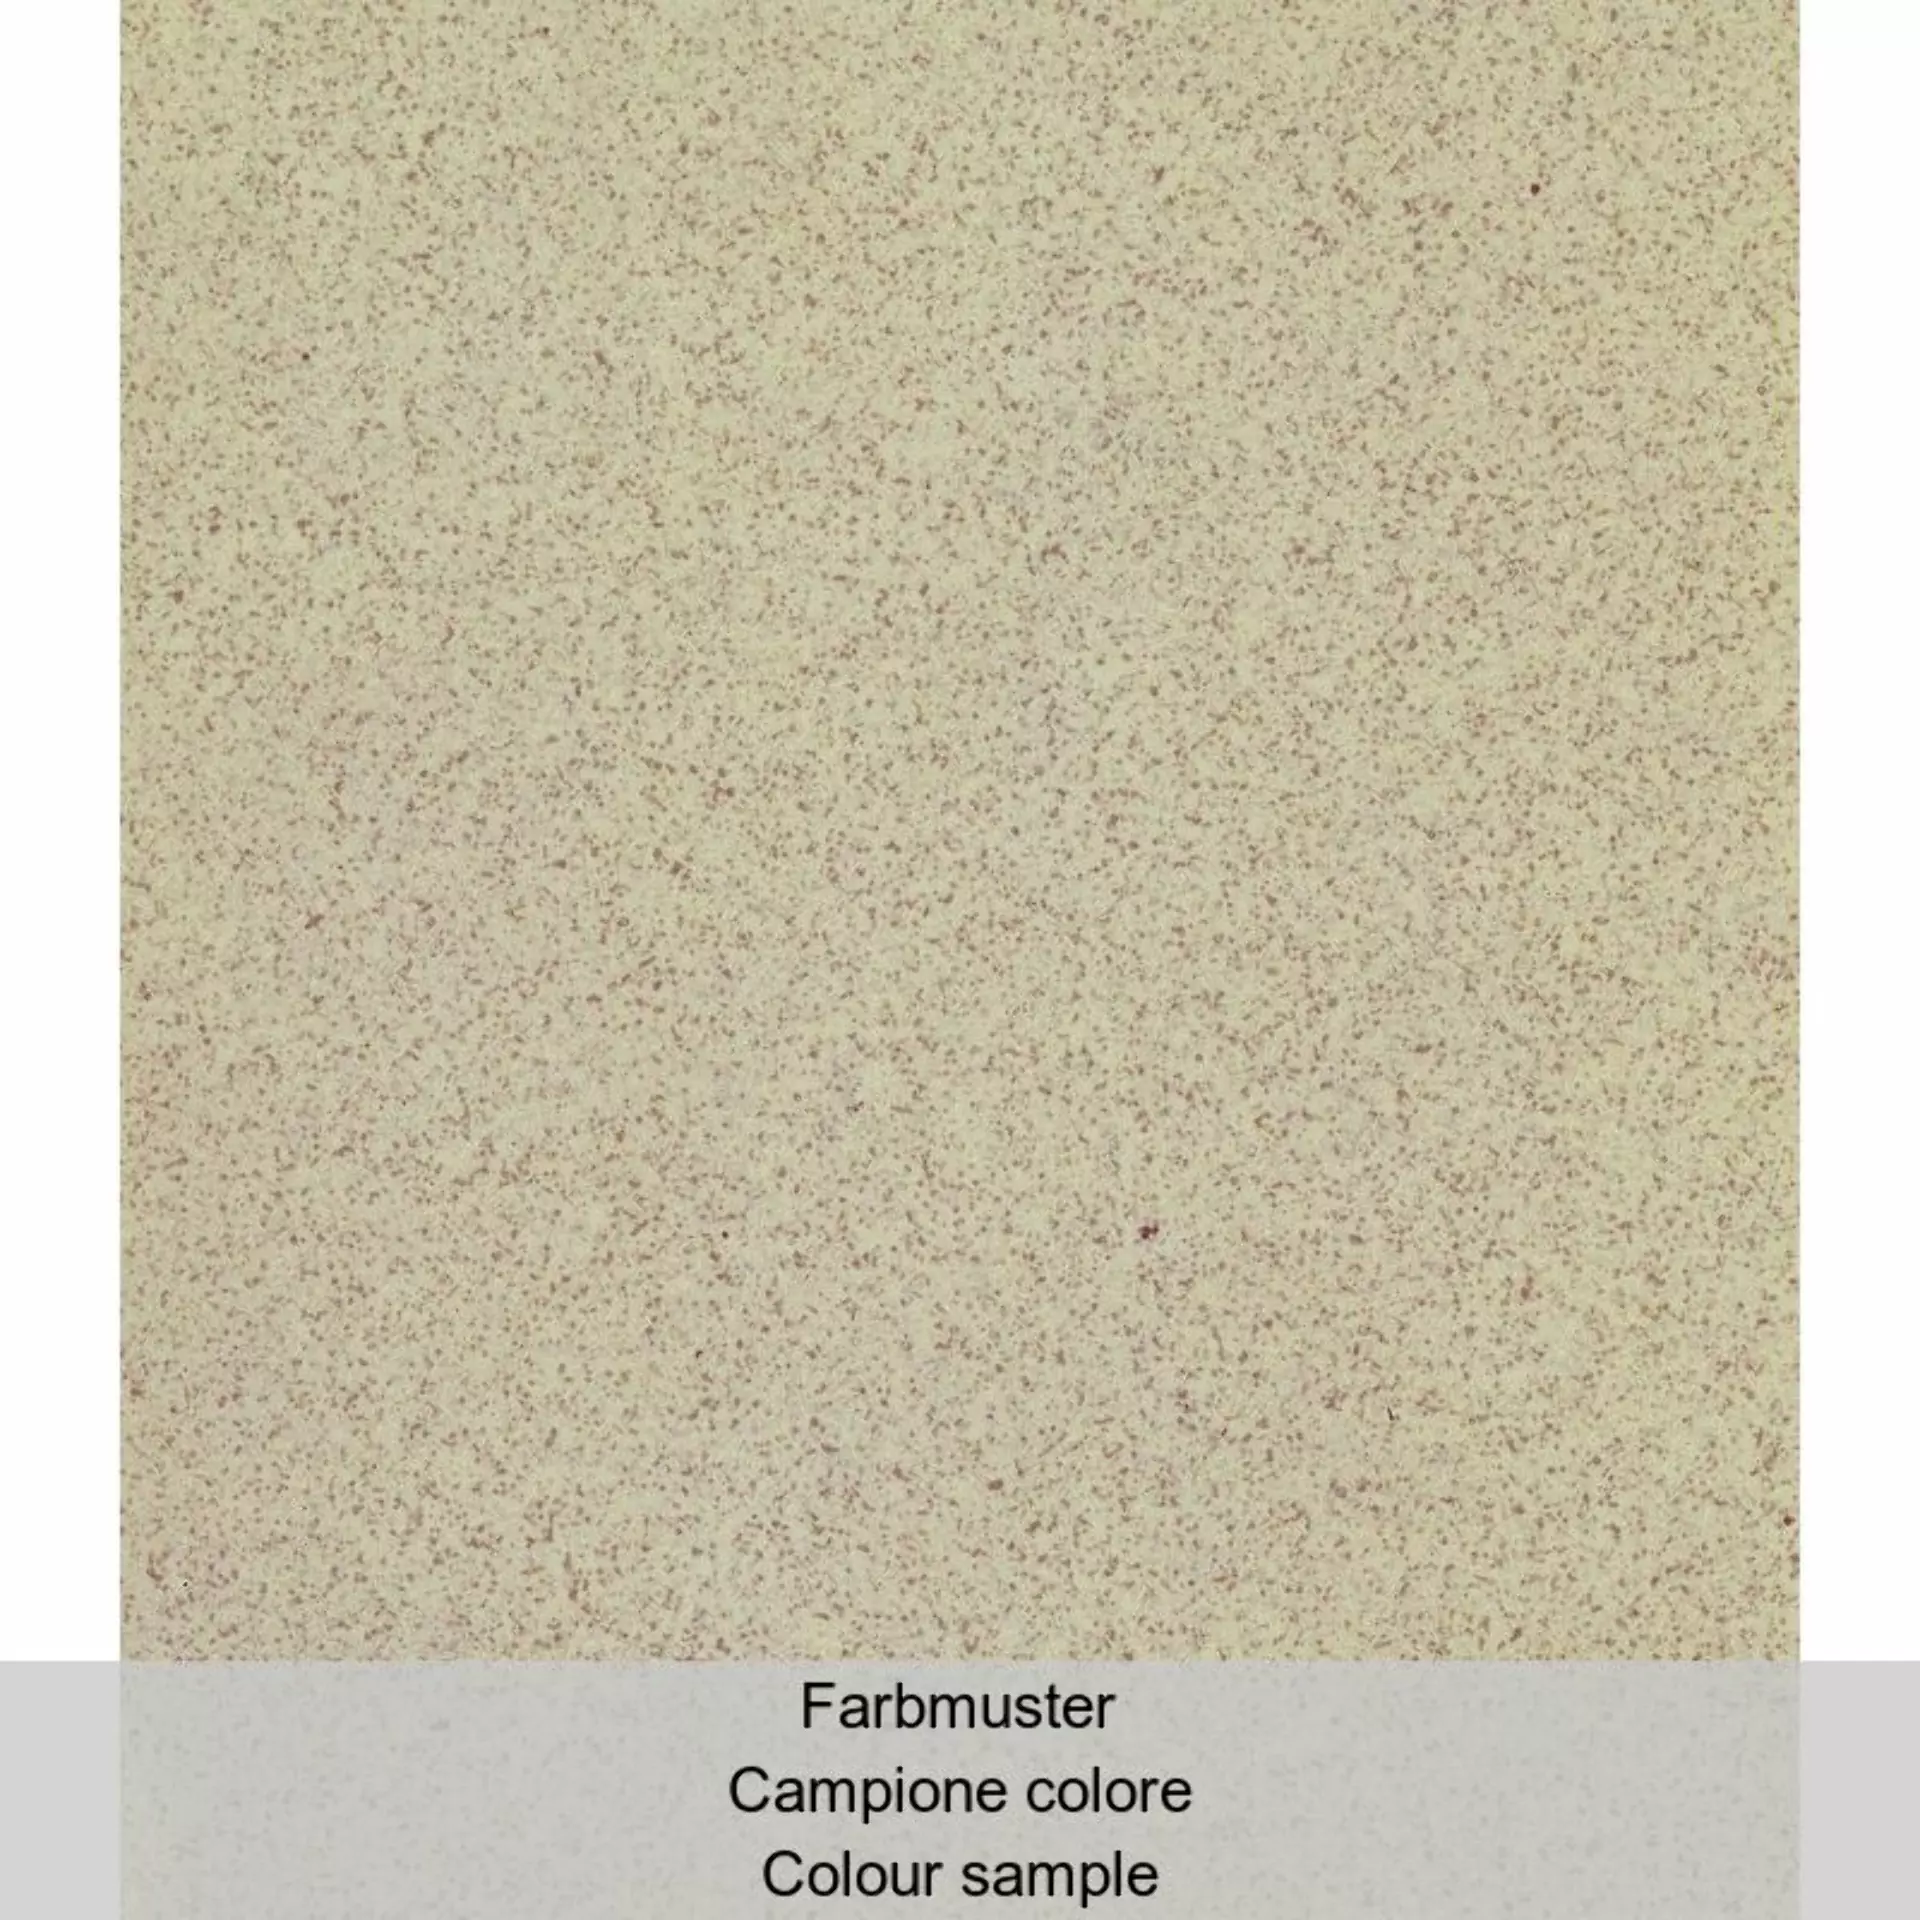 Casalgrande Granito 1 Sahara Naturale – Matt – Antibacterial 705722 30x30cm 8mm